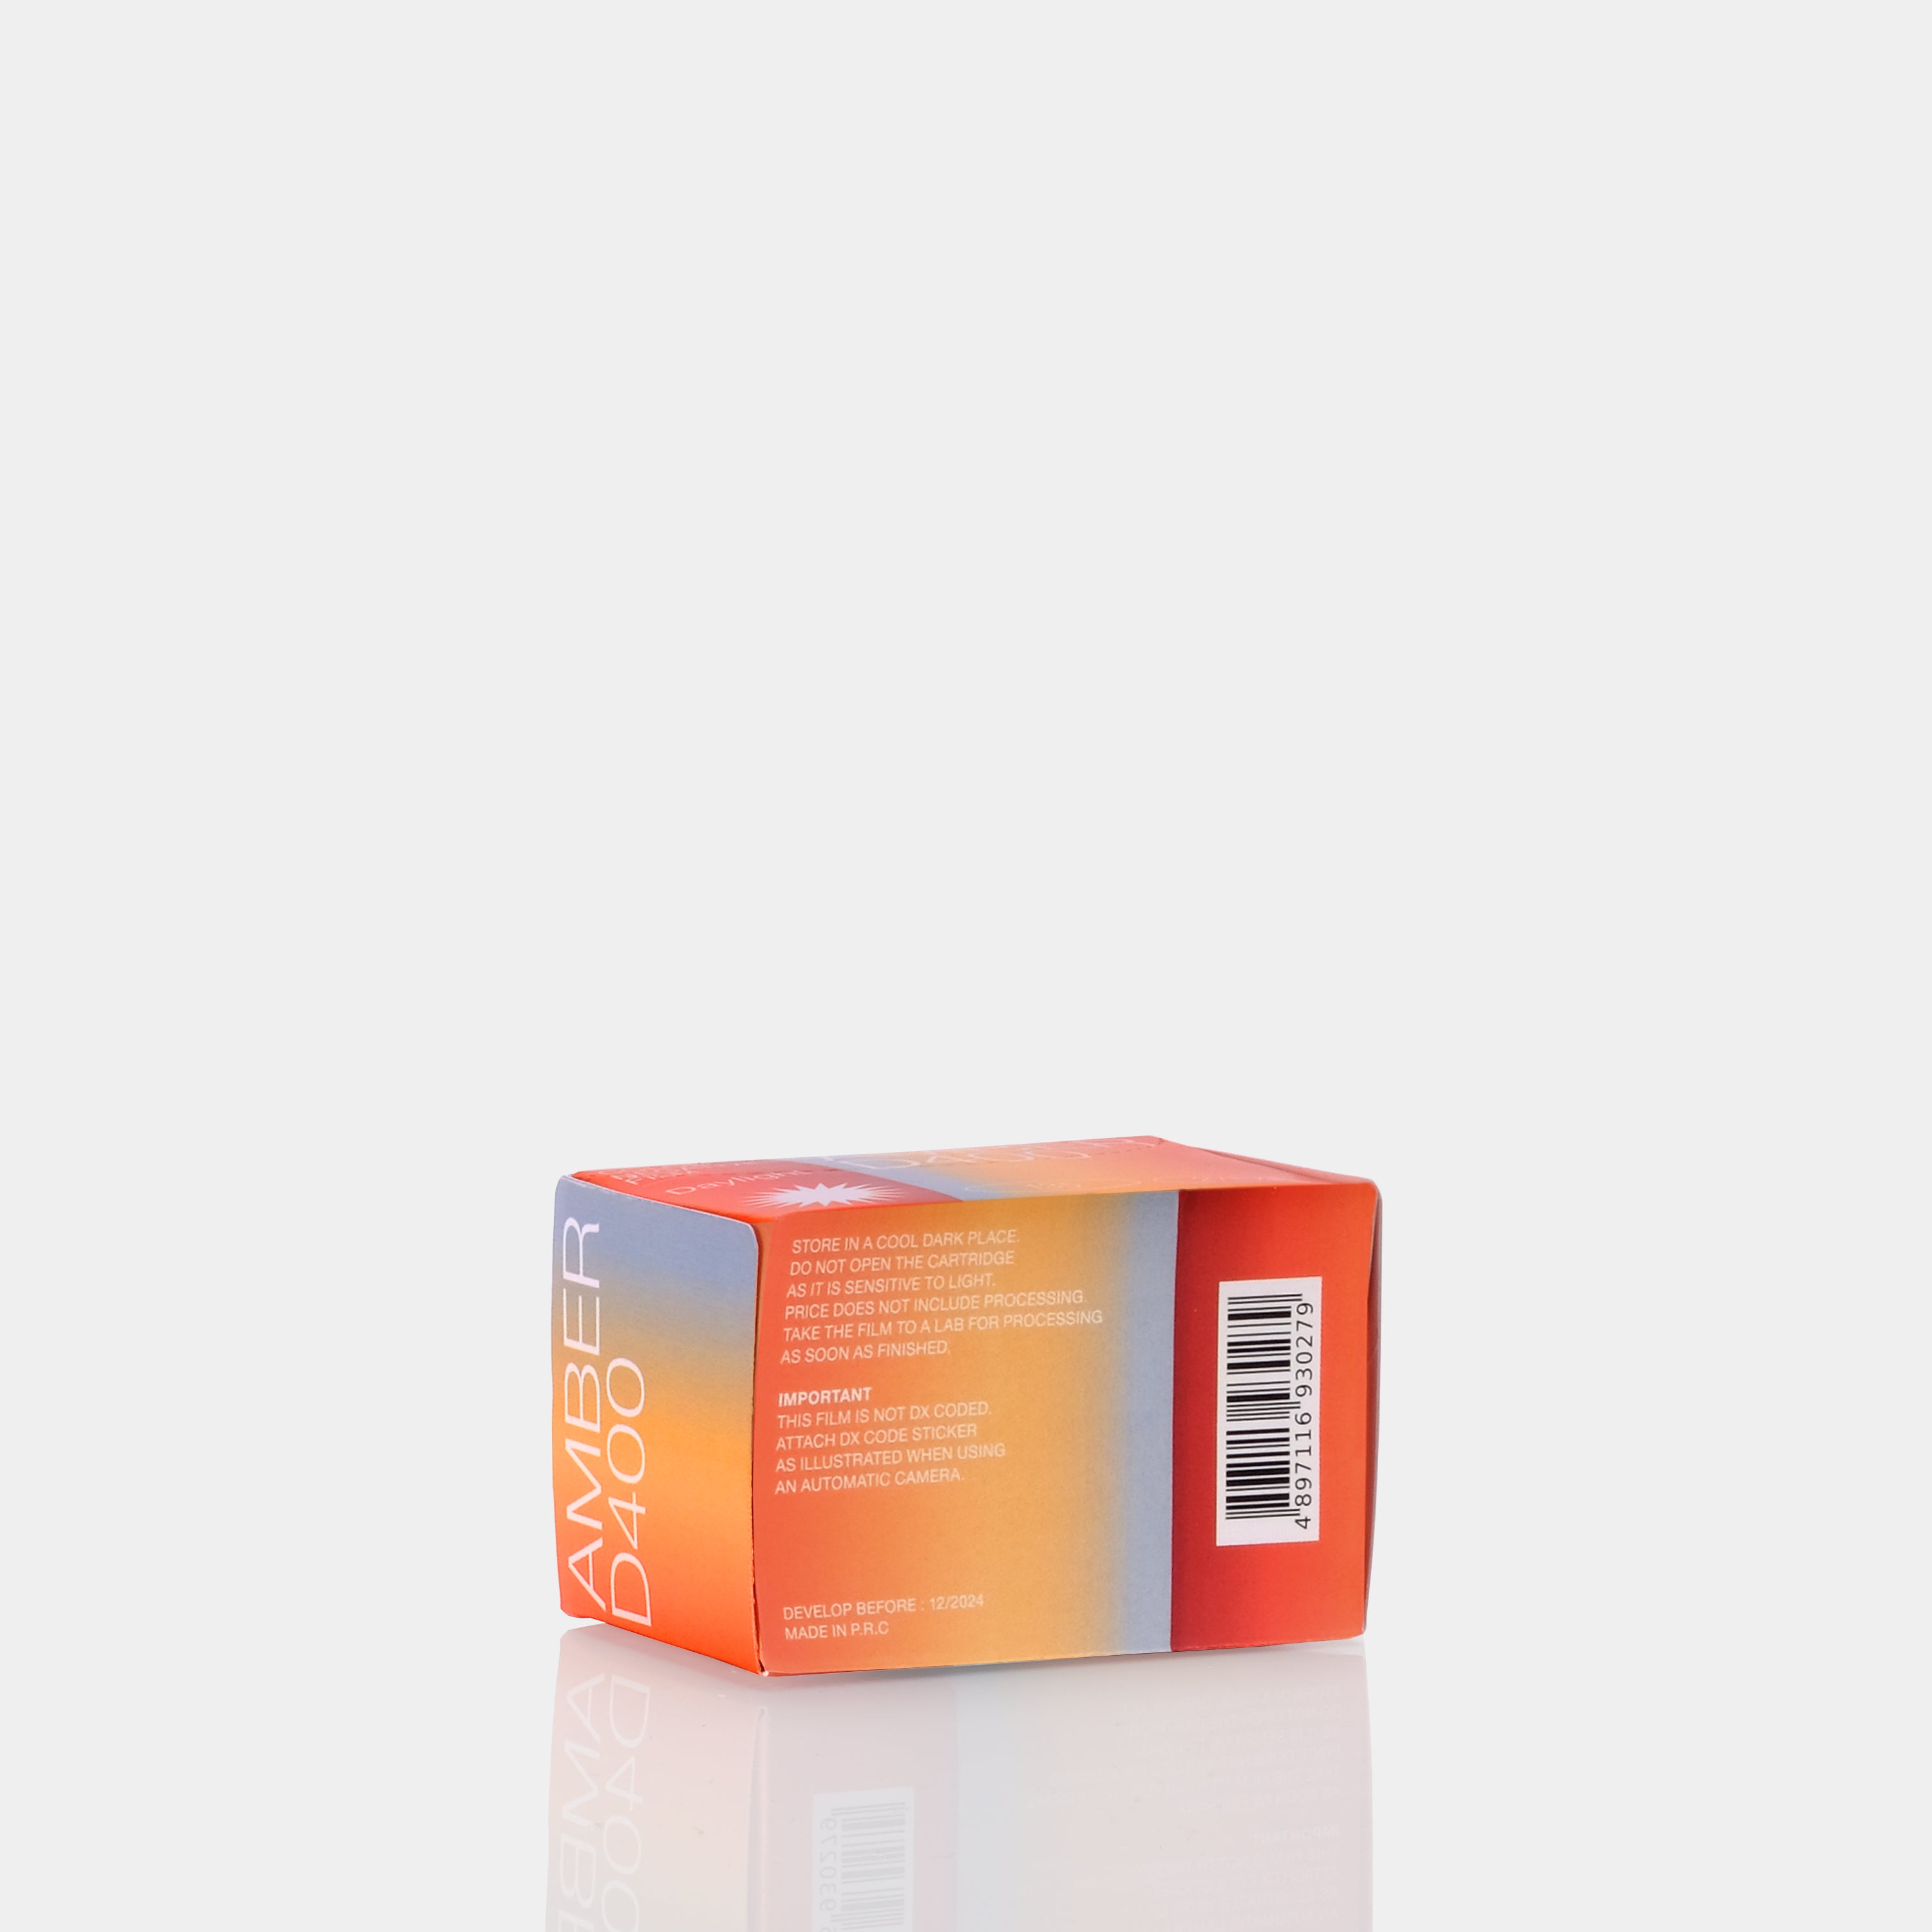 Film négatif couleur Amber D400 (35 mm, 27 expositions) – Studio